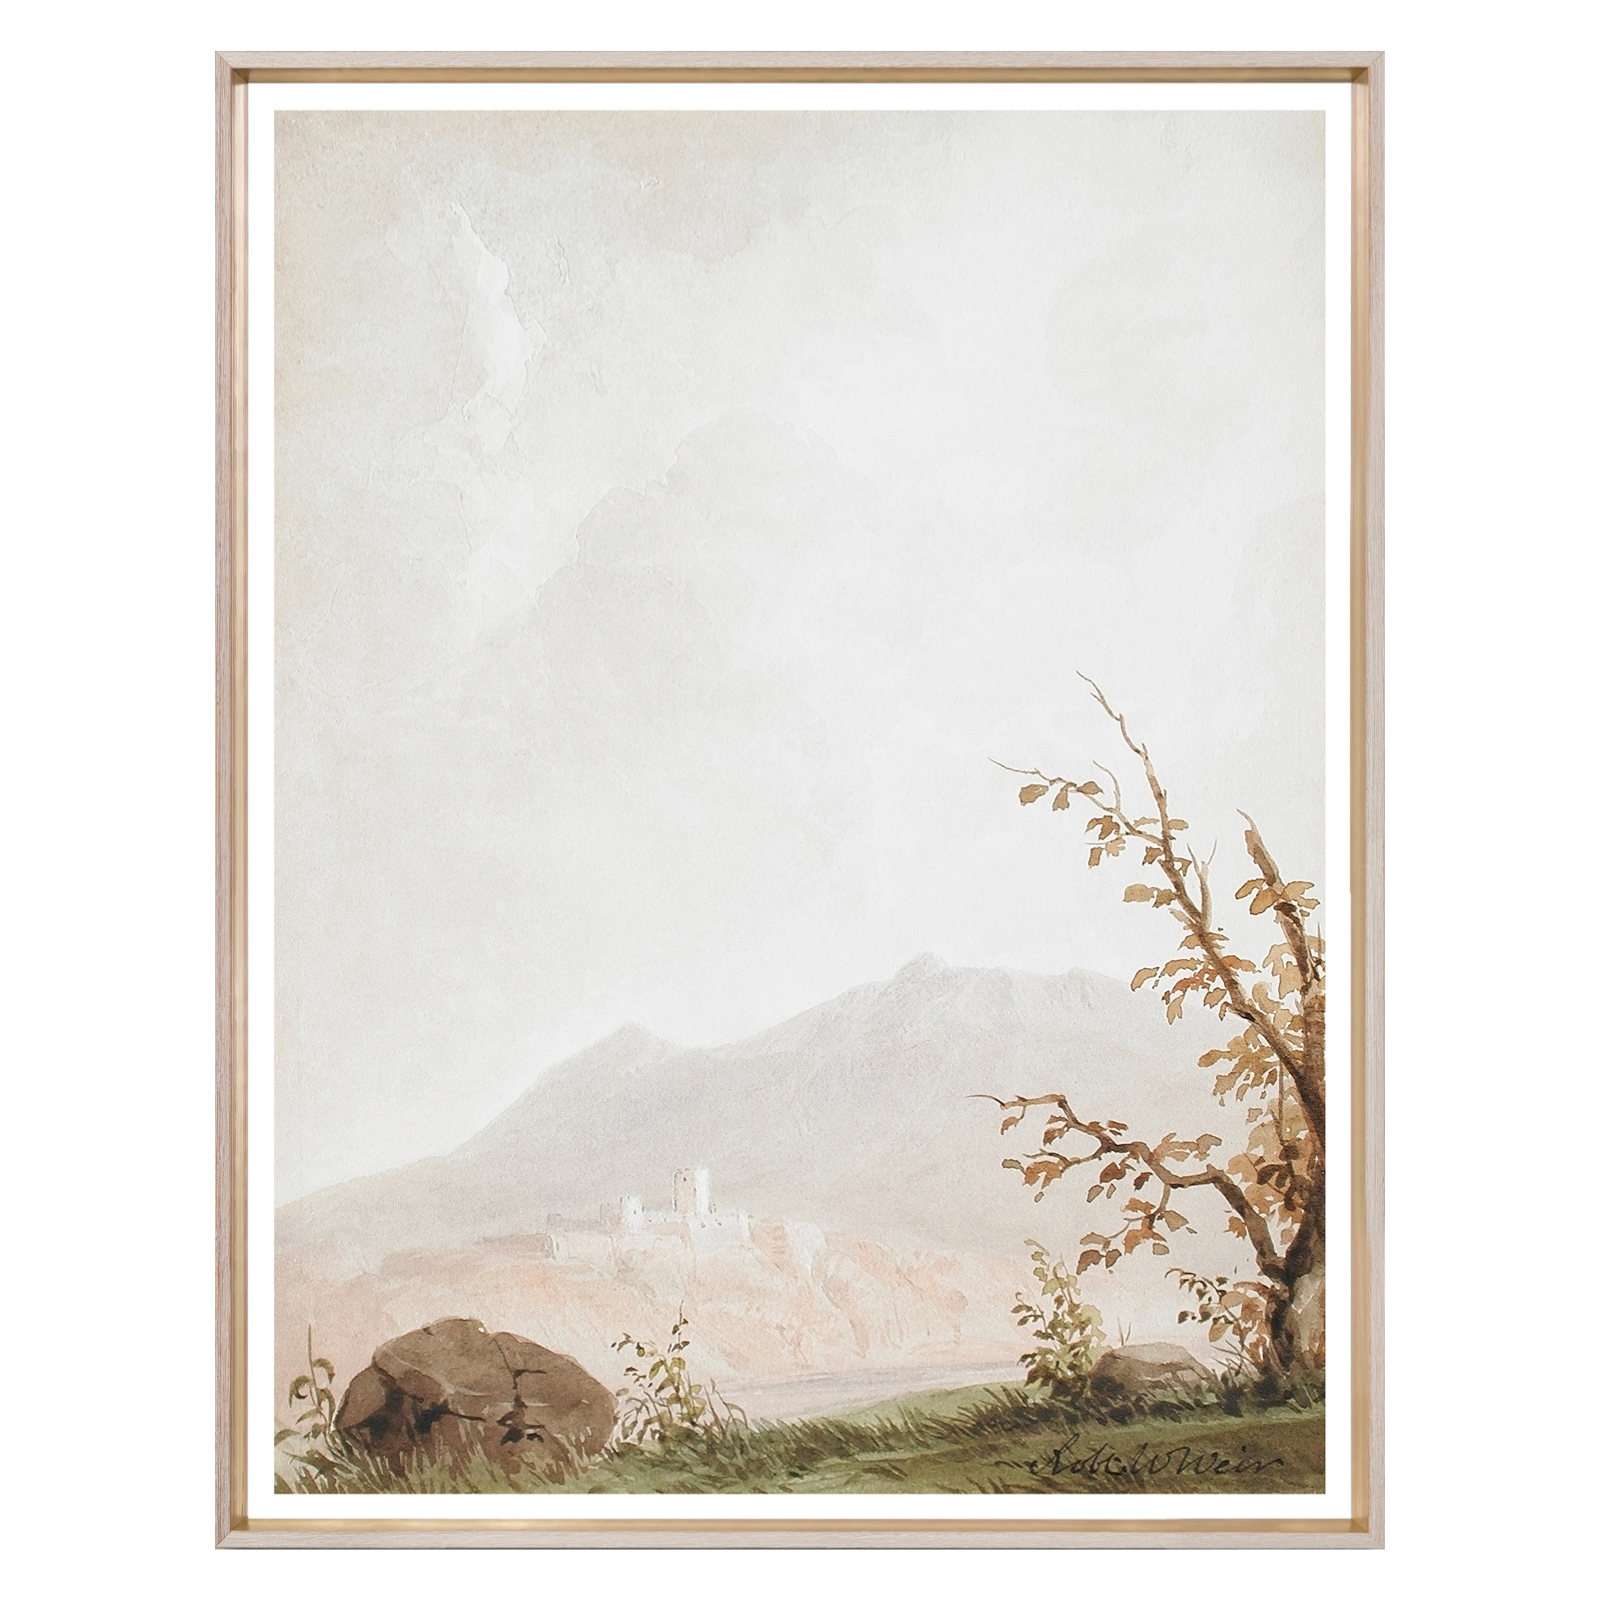 FLOOR MODEL - "Landscape of Italy" Framed Art Print - 41" x 58"